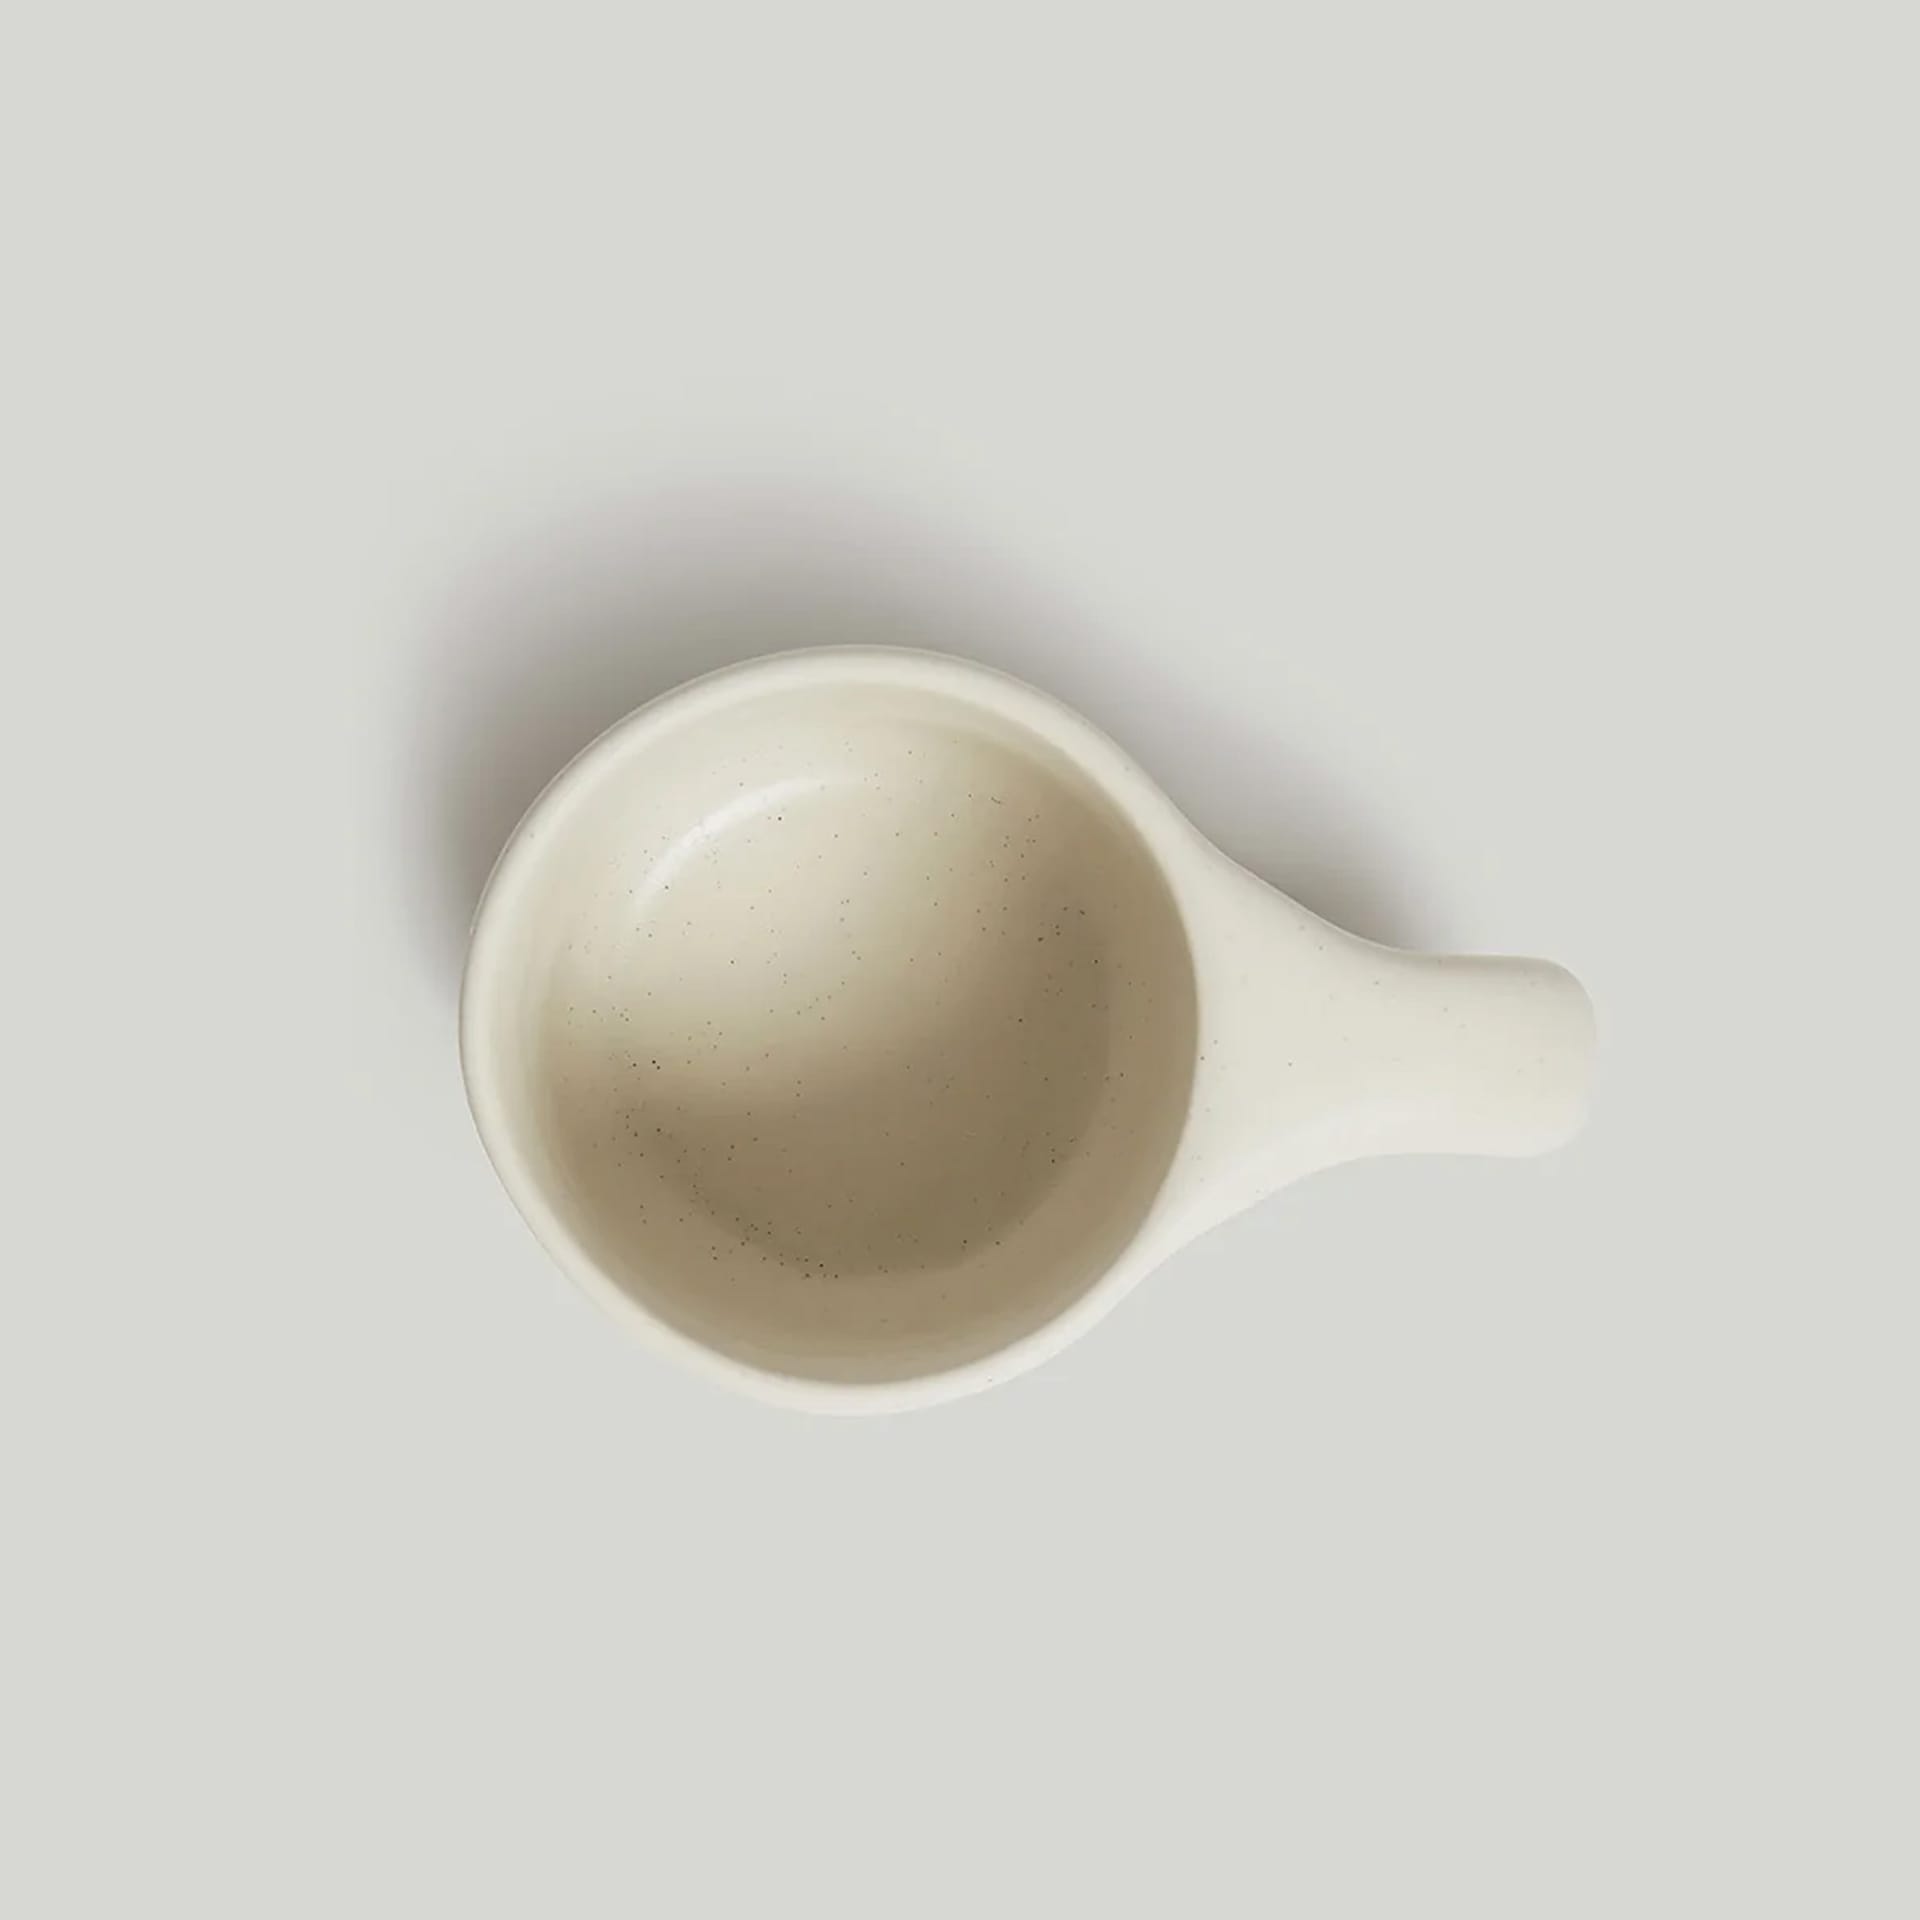 Dough Mug Cream - Toogood - NO GA